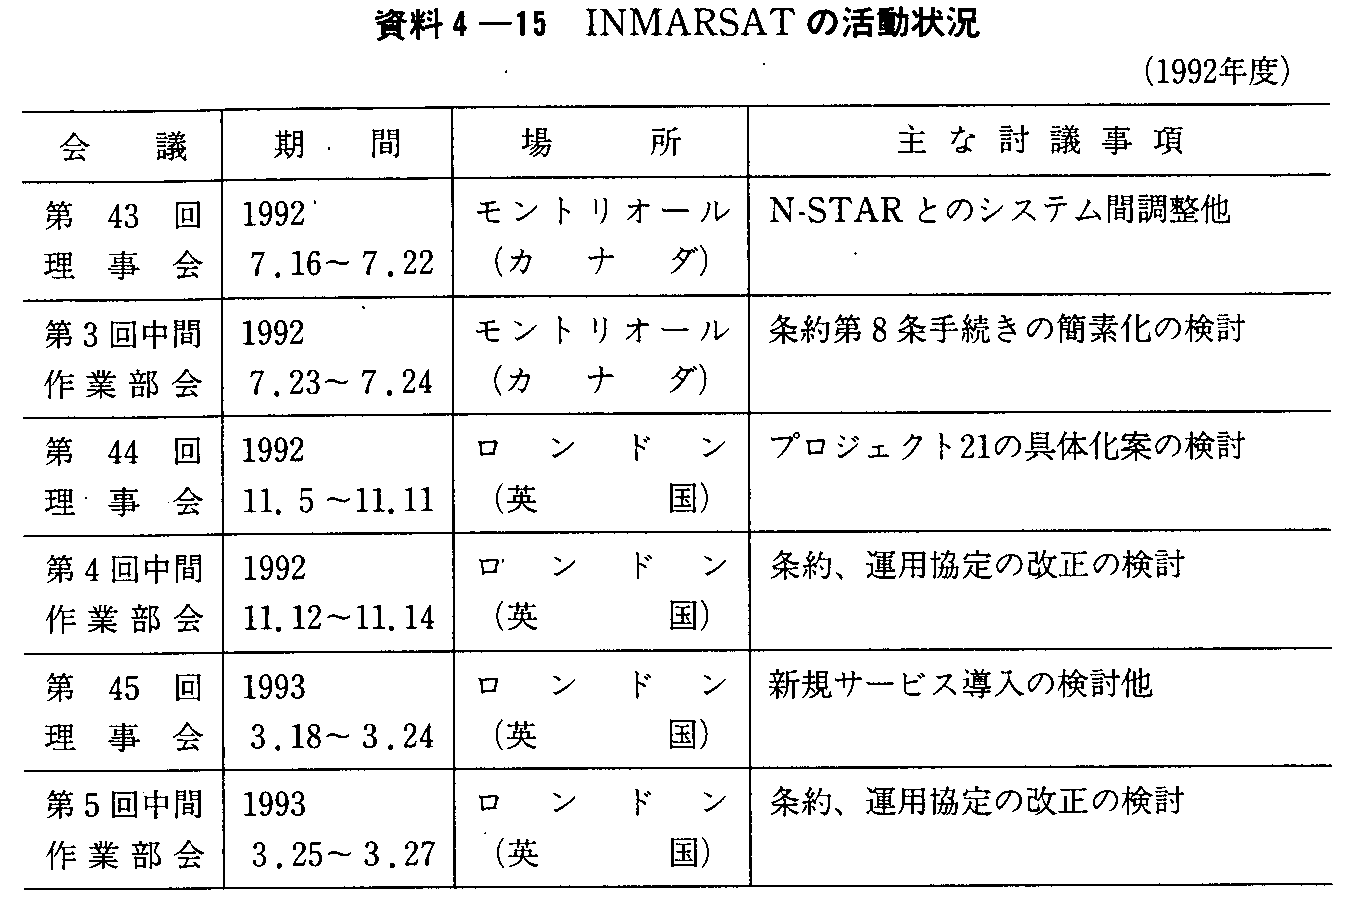 4-15 INMARSAT̊(1992Nx)